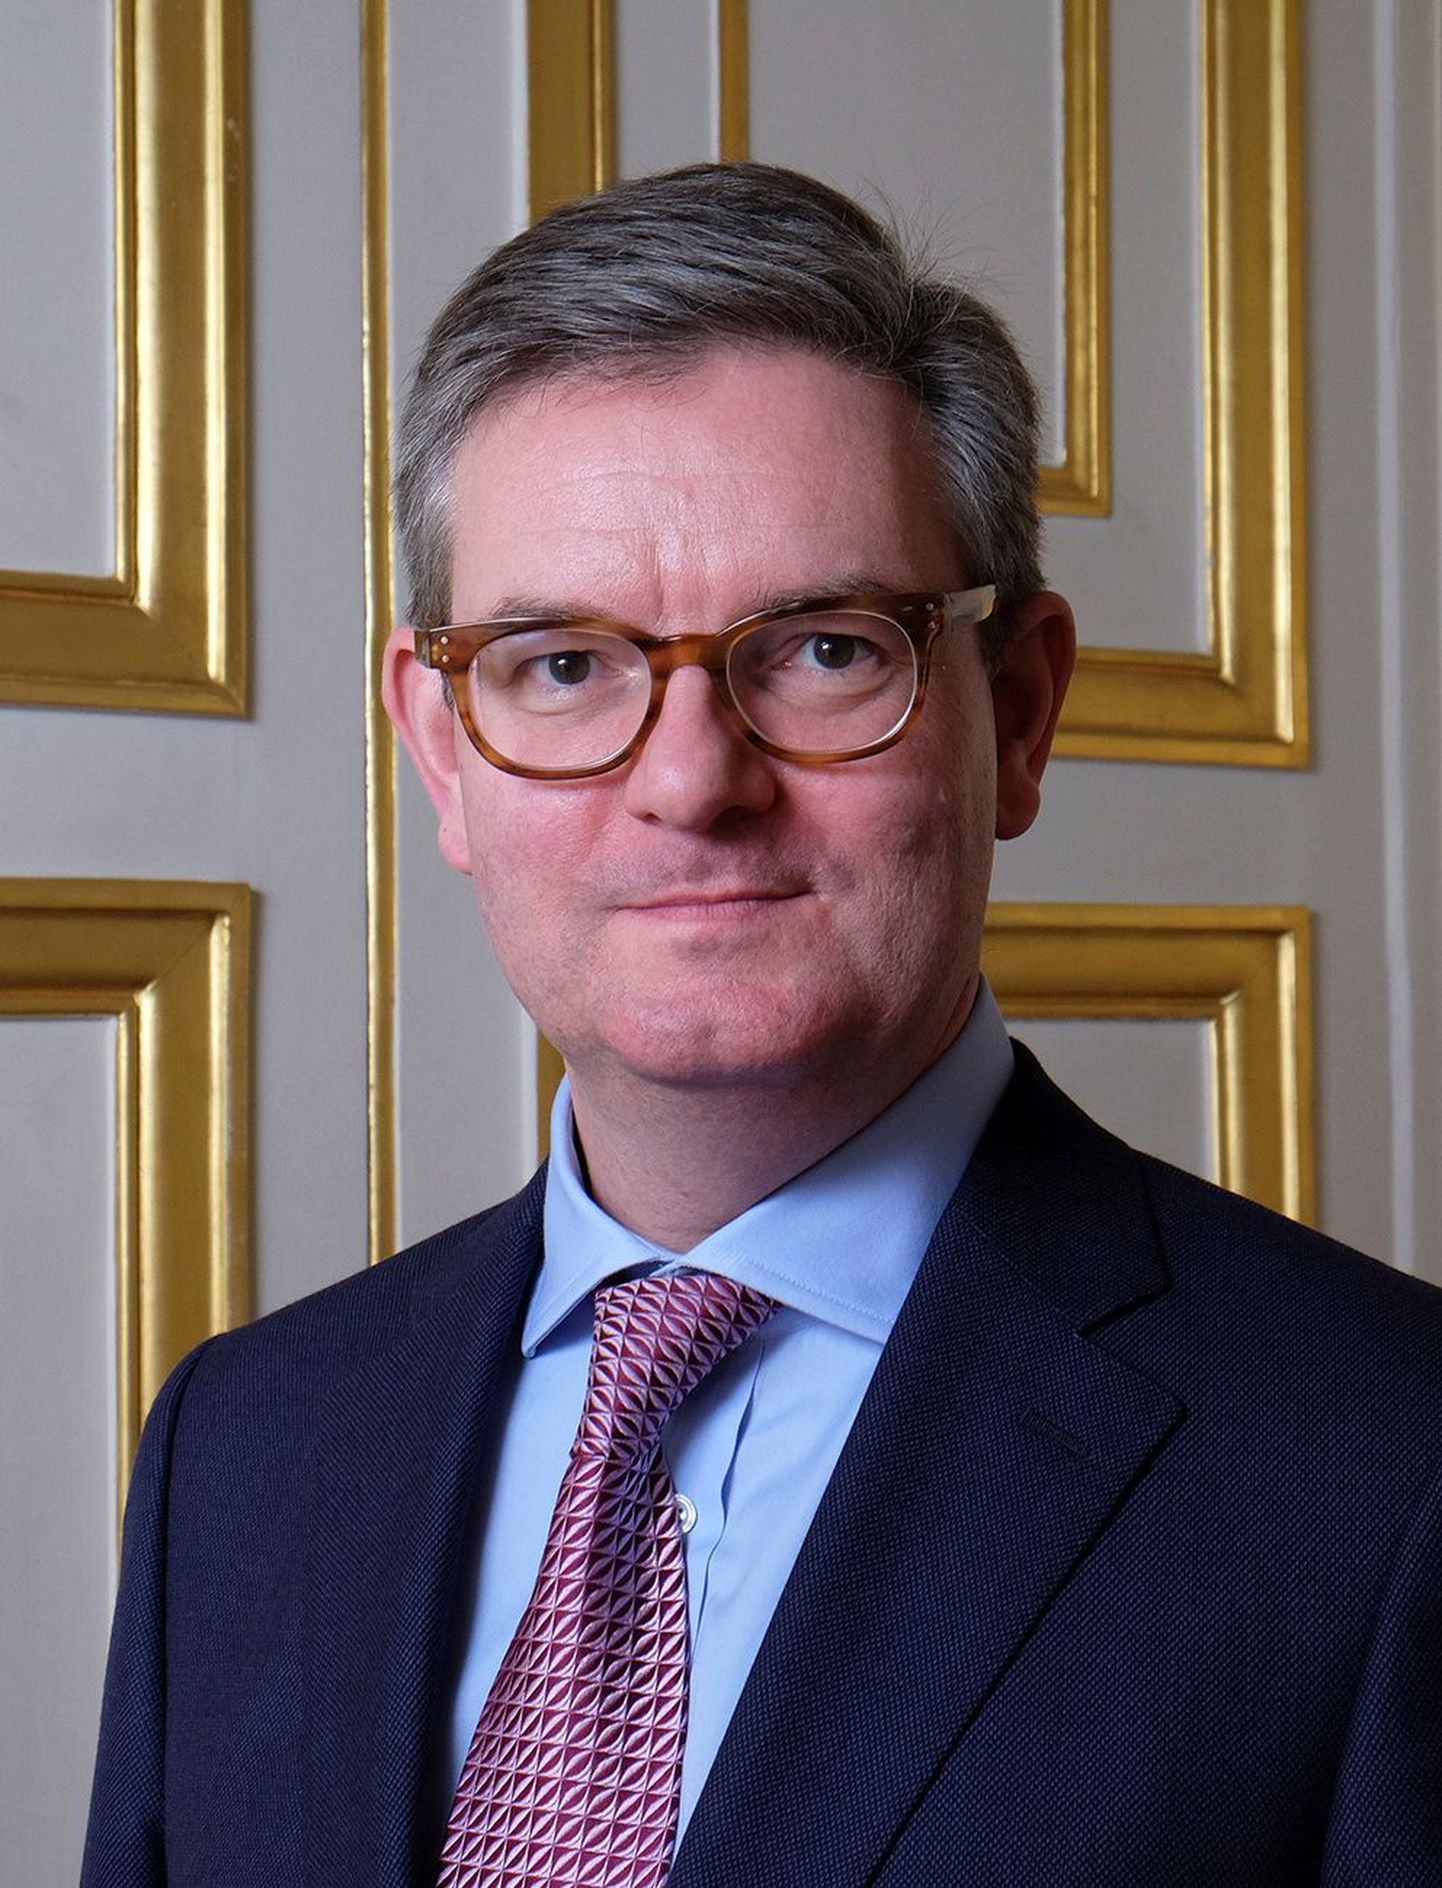 Briti suursaadiku Prantsusmaal Julian King